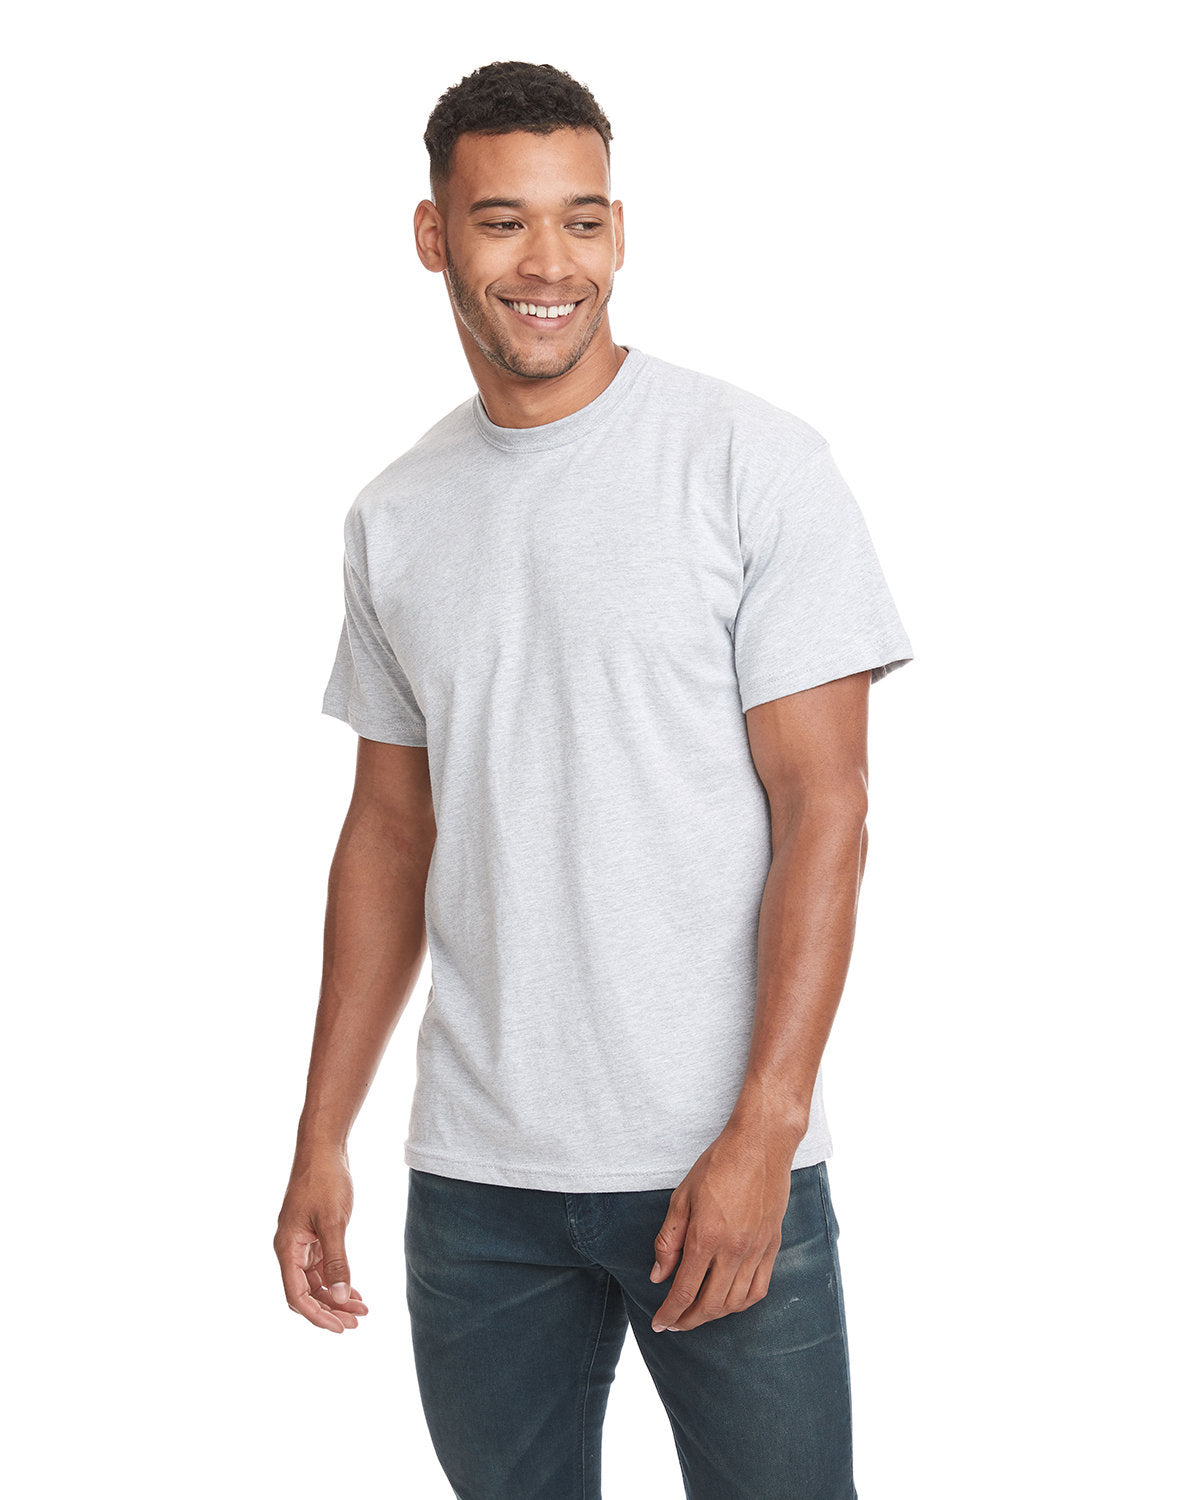 Next Level 3600 - Cotton T-Shirt